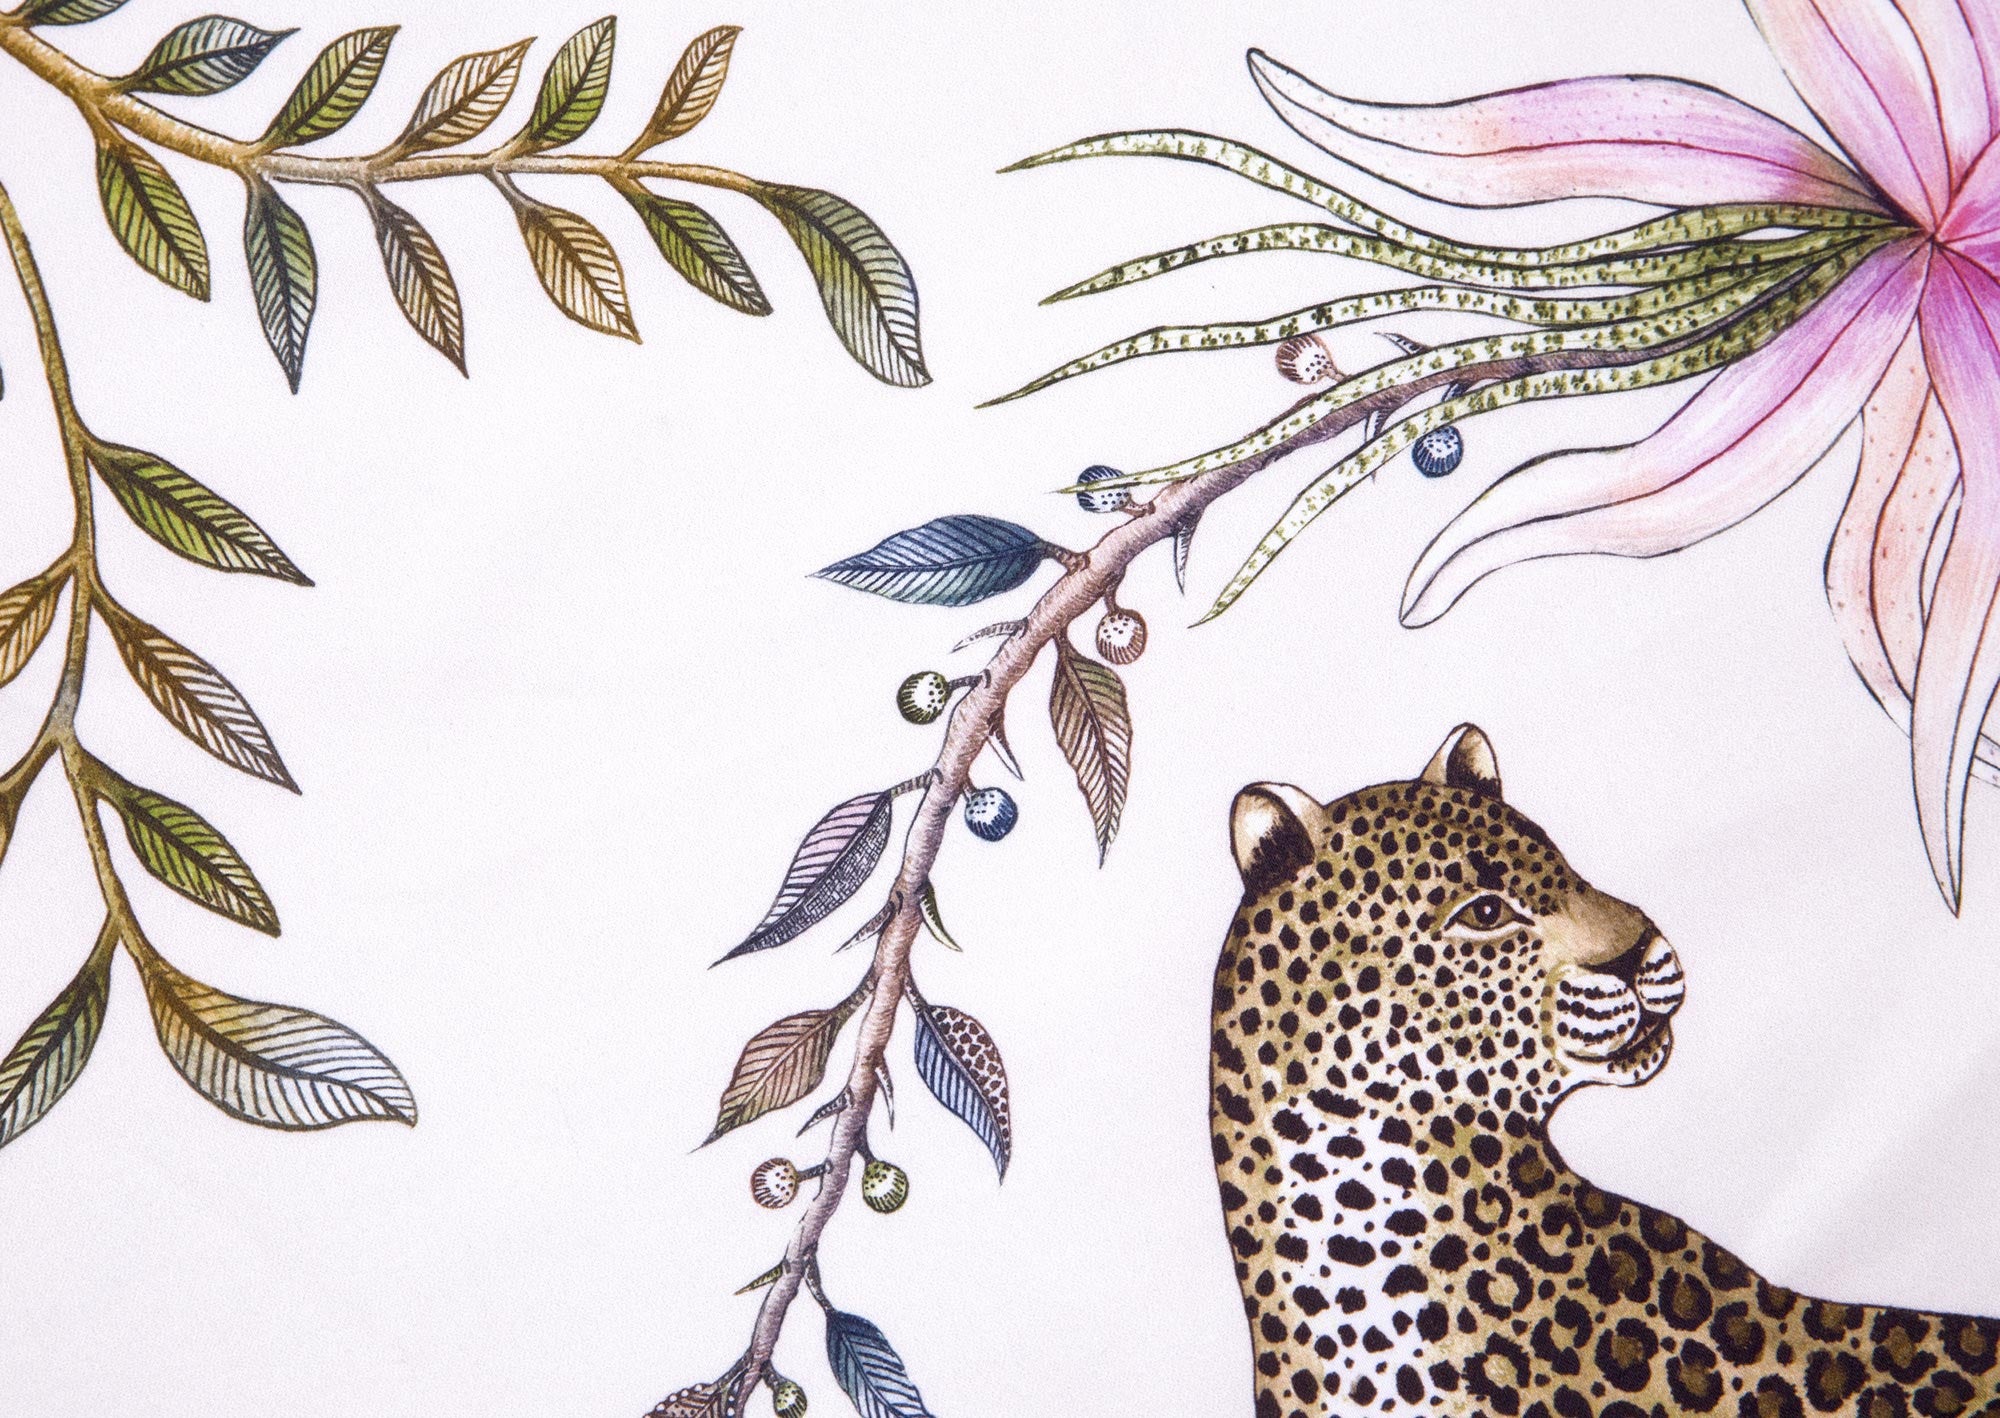 Leopard Lily Tablecloth - Cotton - Safari Stone - Small